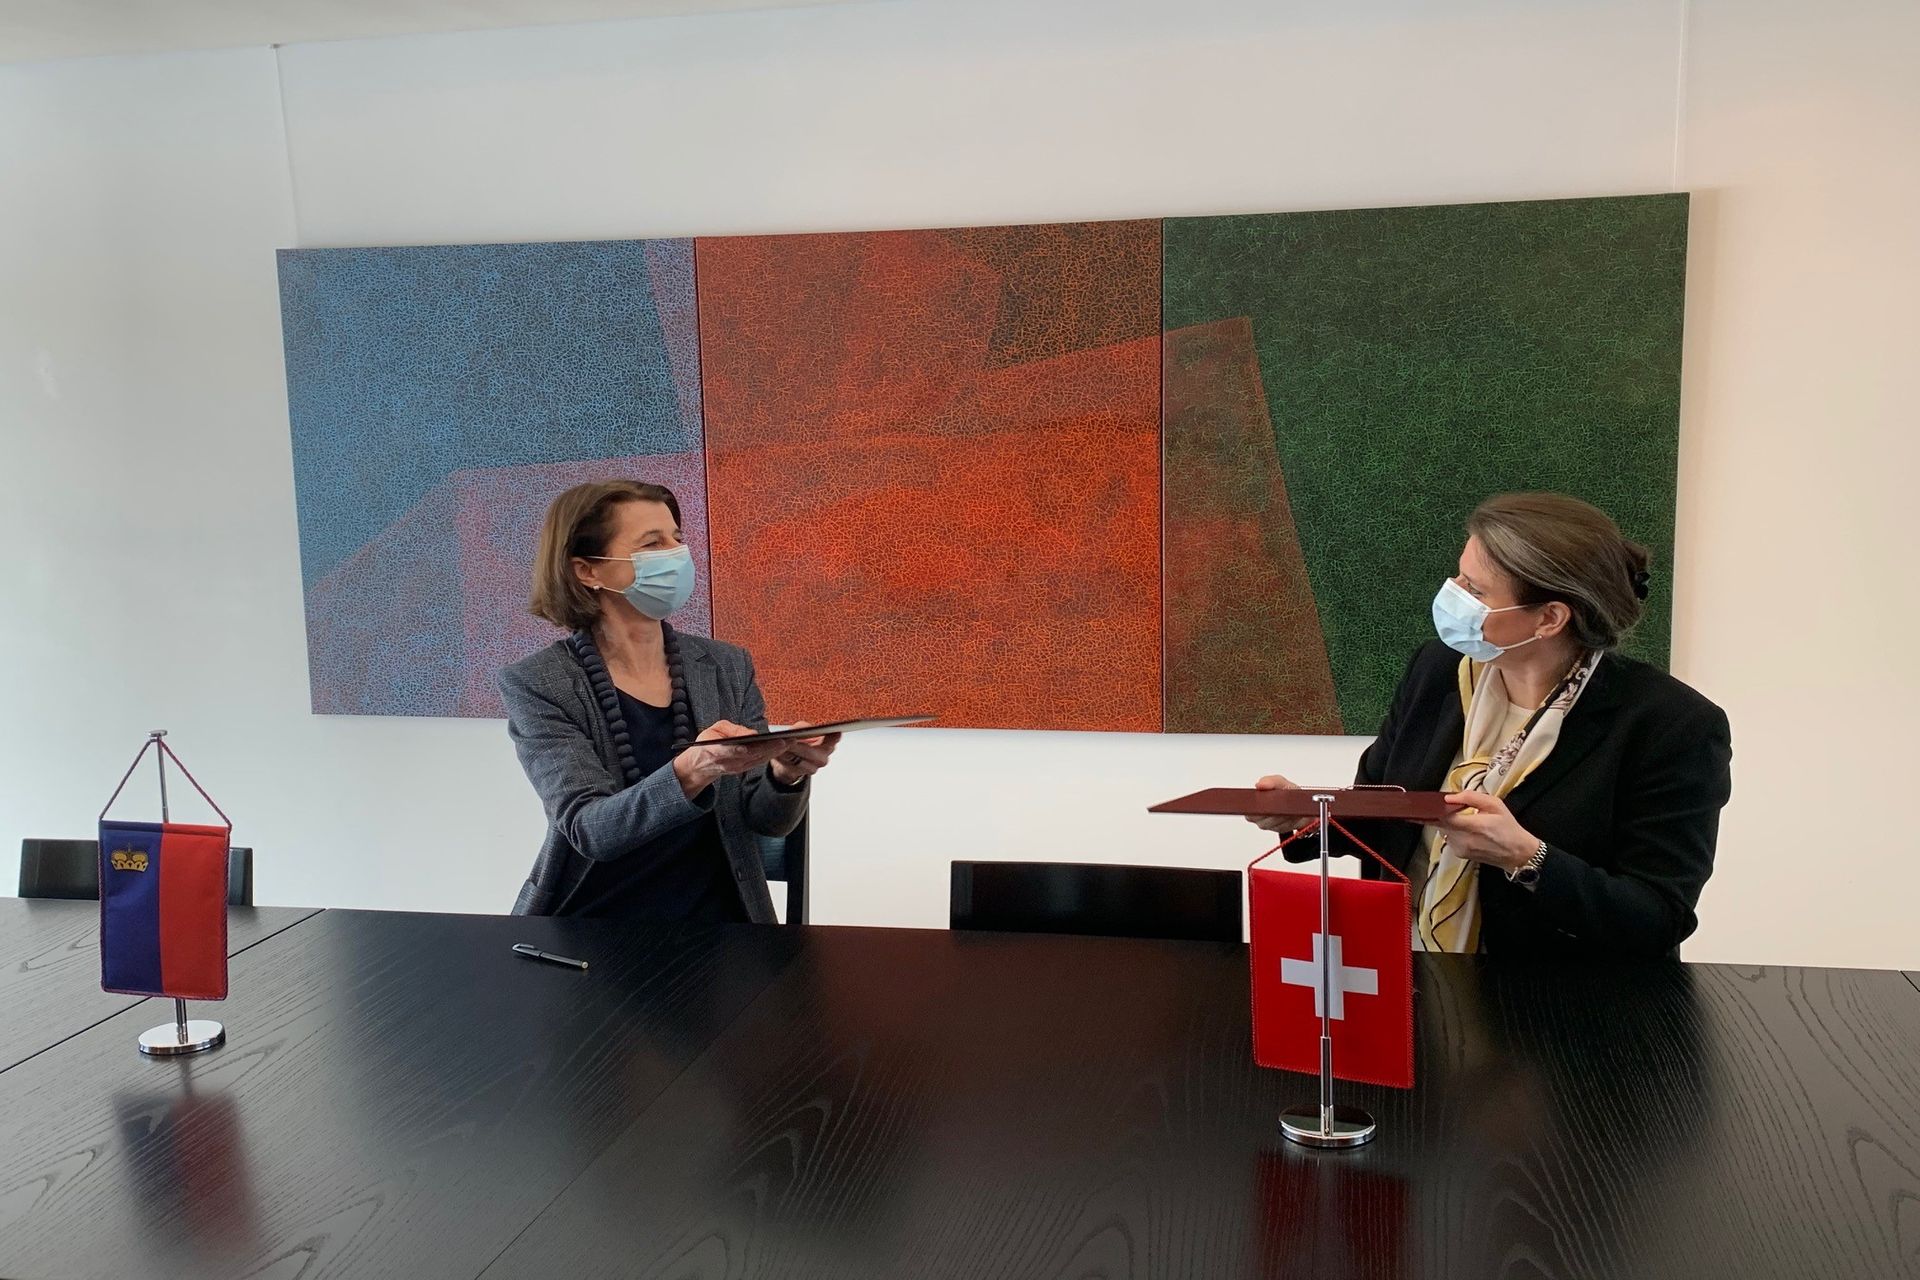 Utbyte av innovationsavtalet mellan den schweiziska statssekreteraren Martina Hirayama och Liechtensteins ambassadör i Bern, Doris Frick